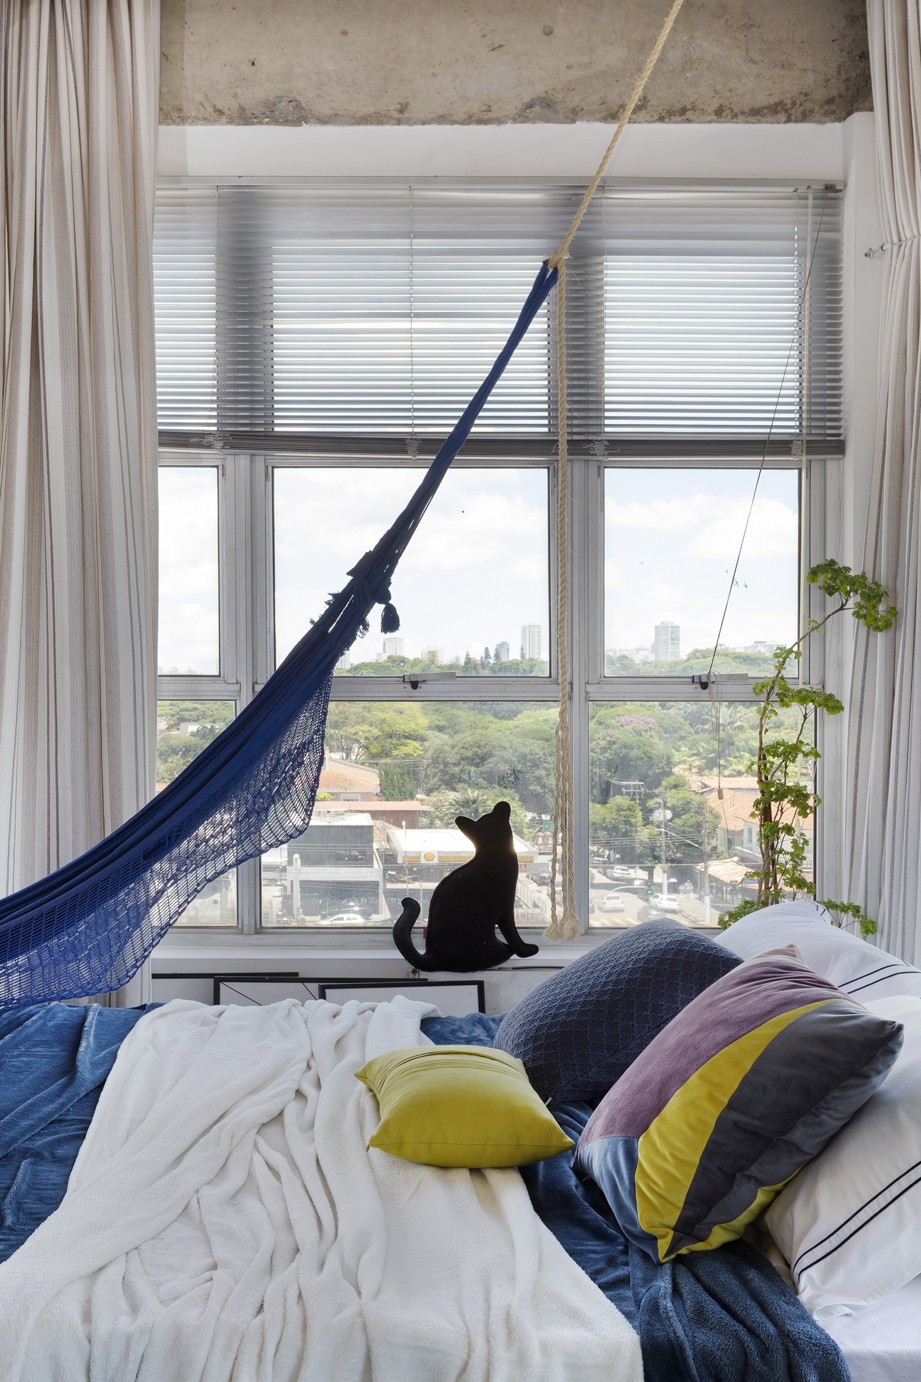 Décor do dia: quarto tem janelões, estruturas aparentes e rede de descanso (Foto: Julia Ribeiro)